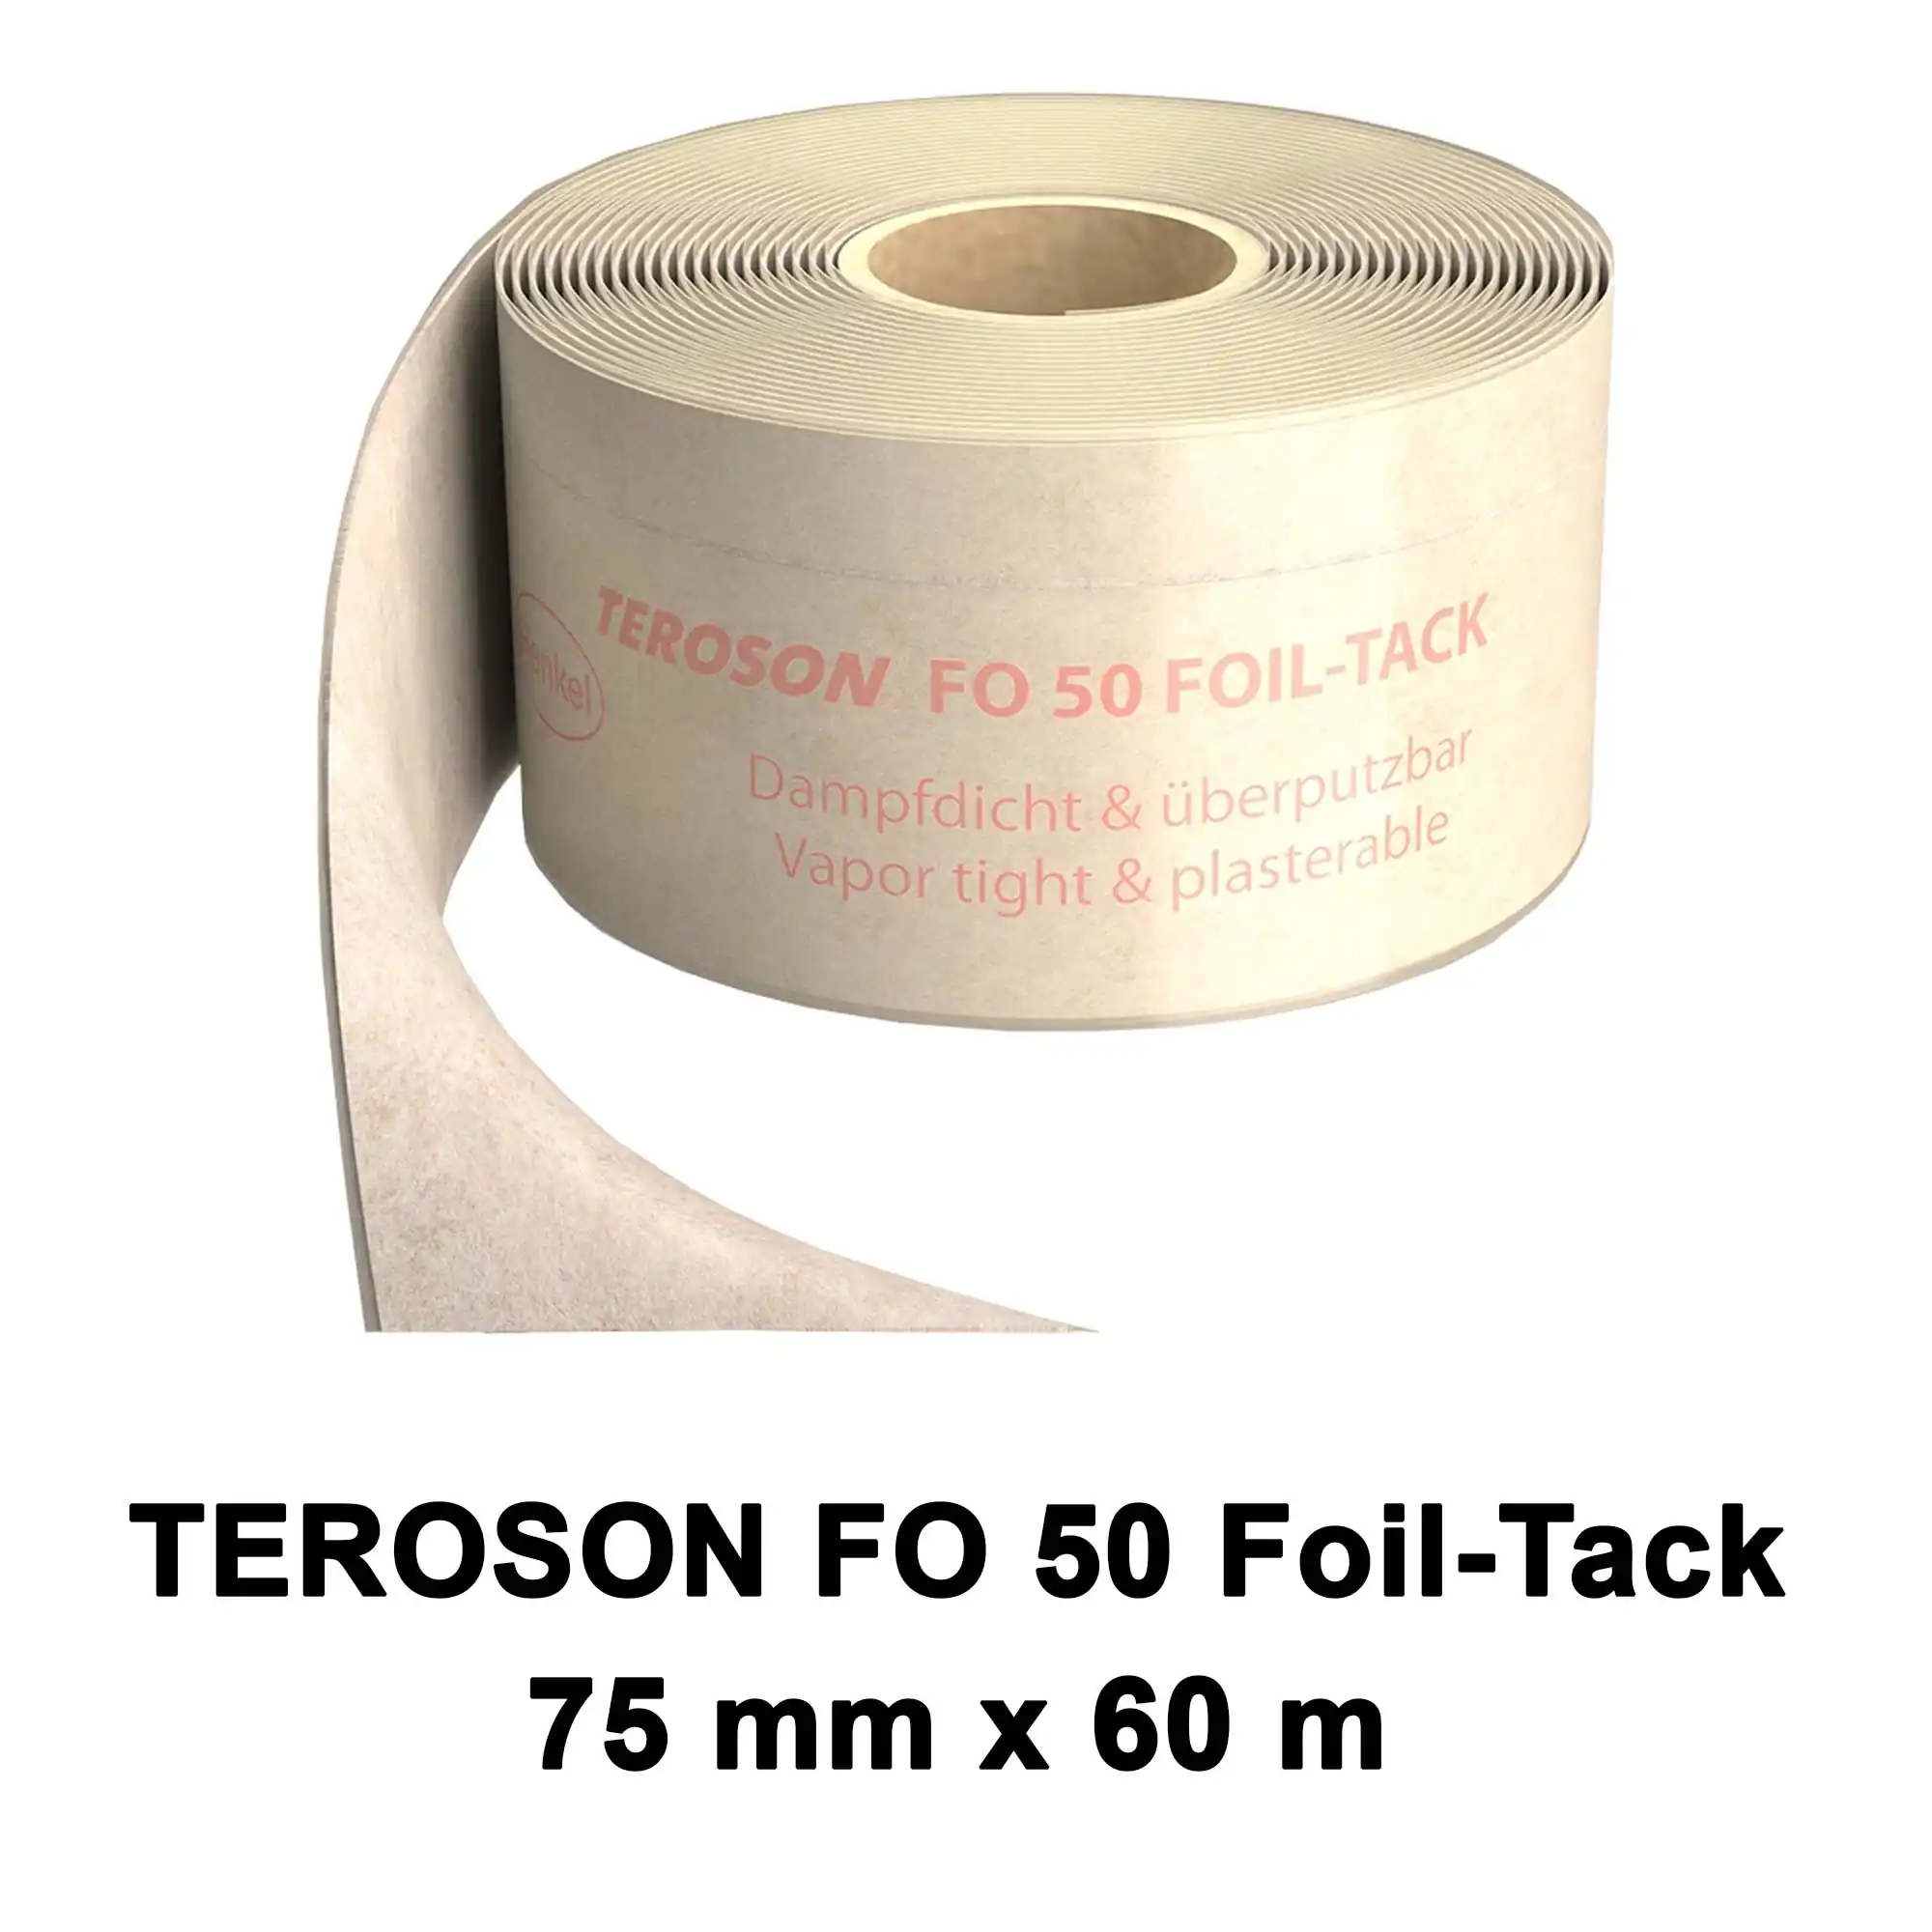 Dichtfolie TEROSON FO 50 FOIL-TACK 75mm x 60m